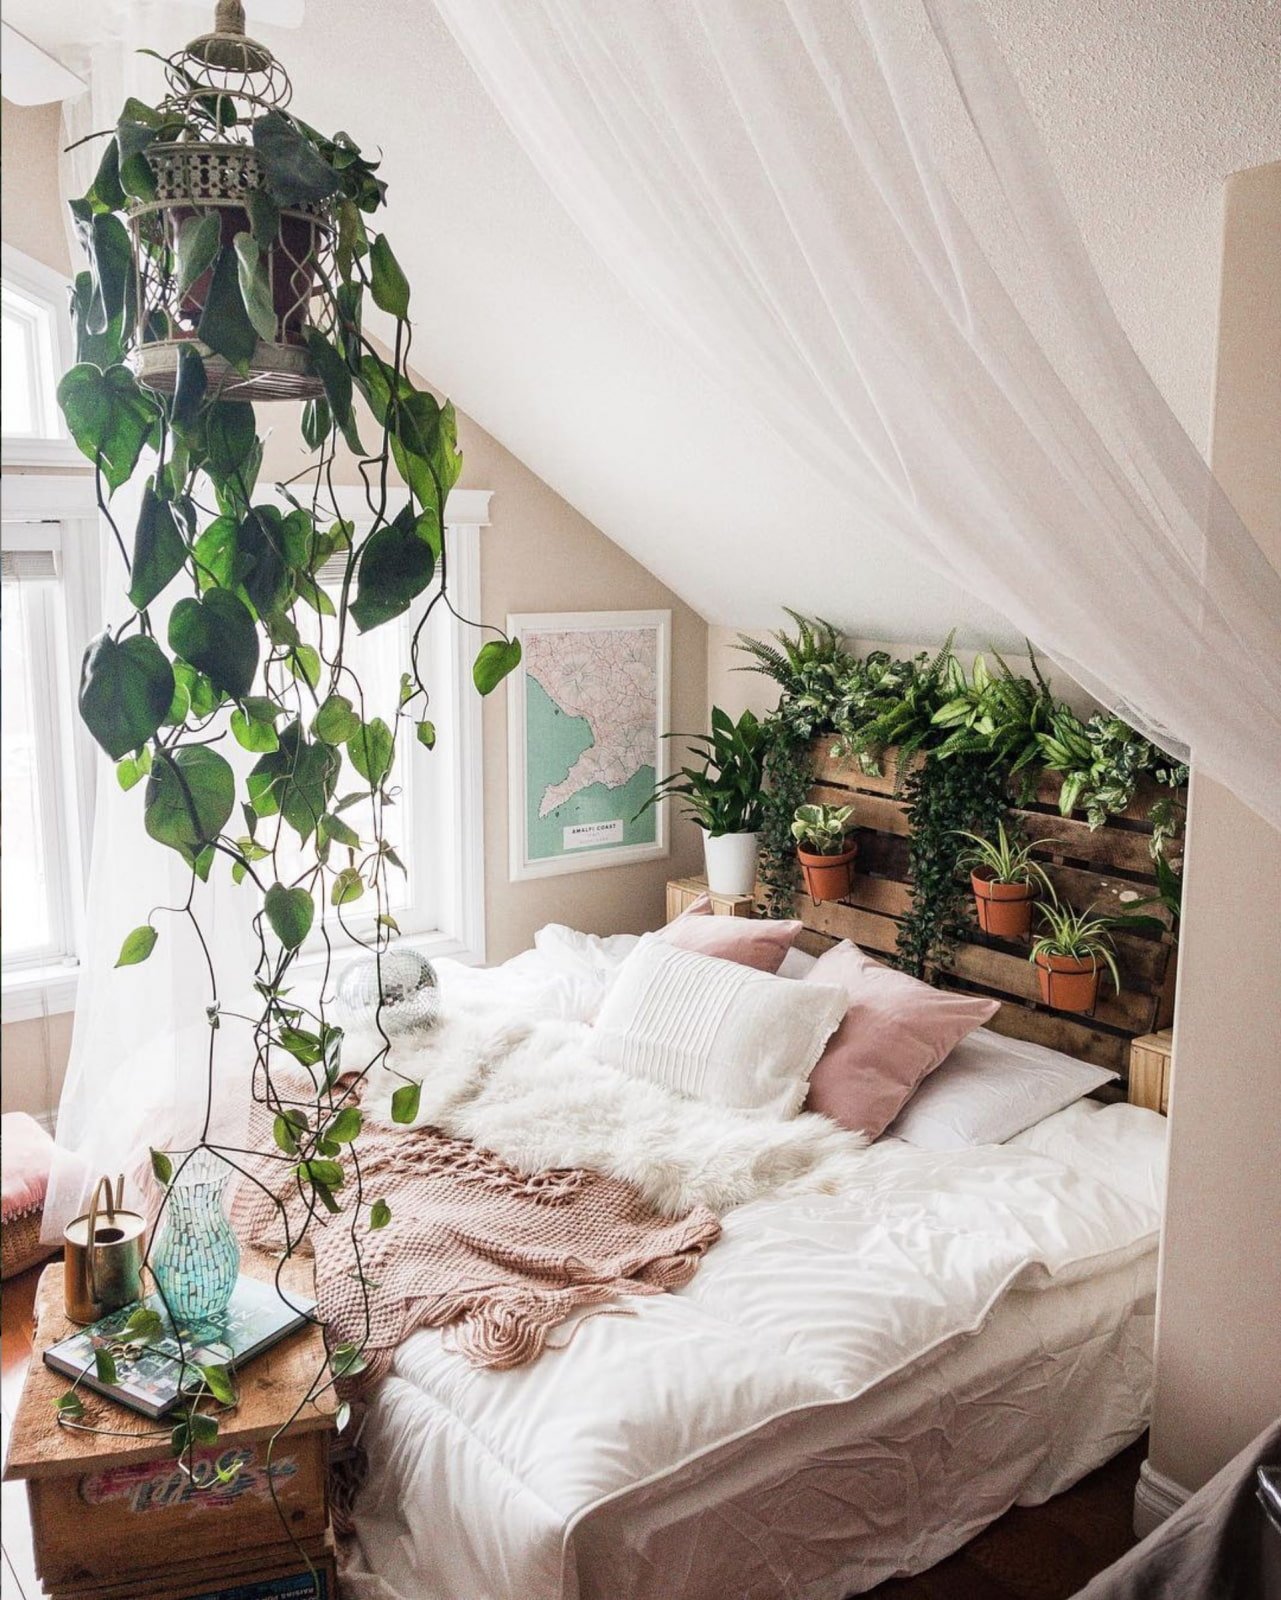 Купить комнат цветы. Растения в интерьере спальни. Уютная комната. Комнатные растения в интерьере спальни. Уютная спальня.